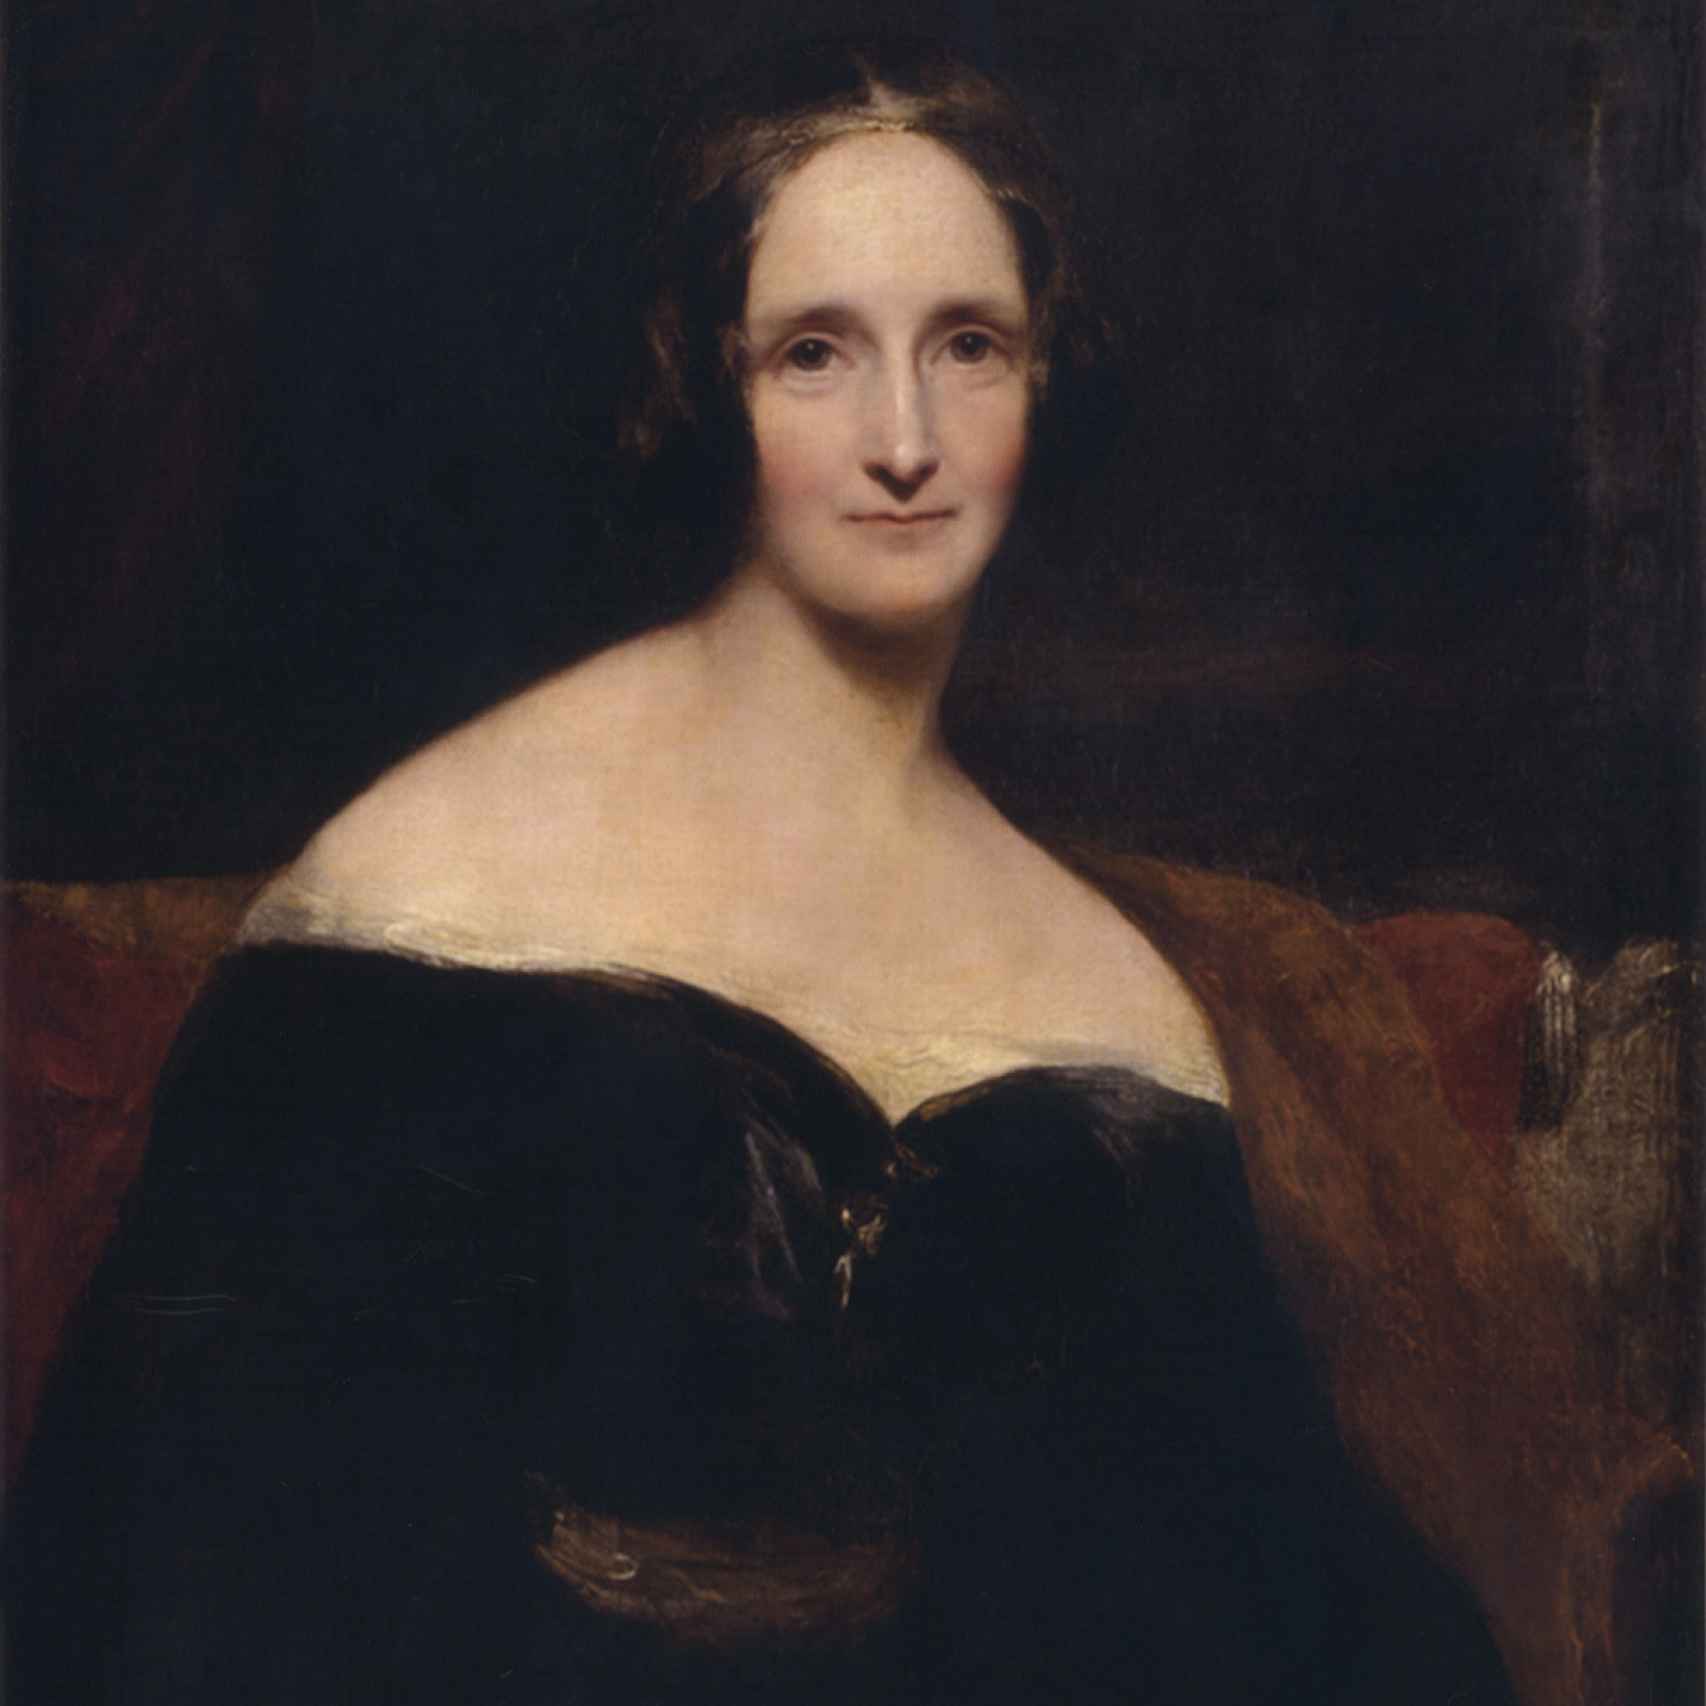 La joven Mary Shelley, madre del mito de Frankenstein.